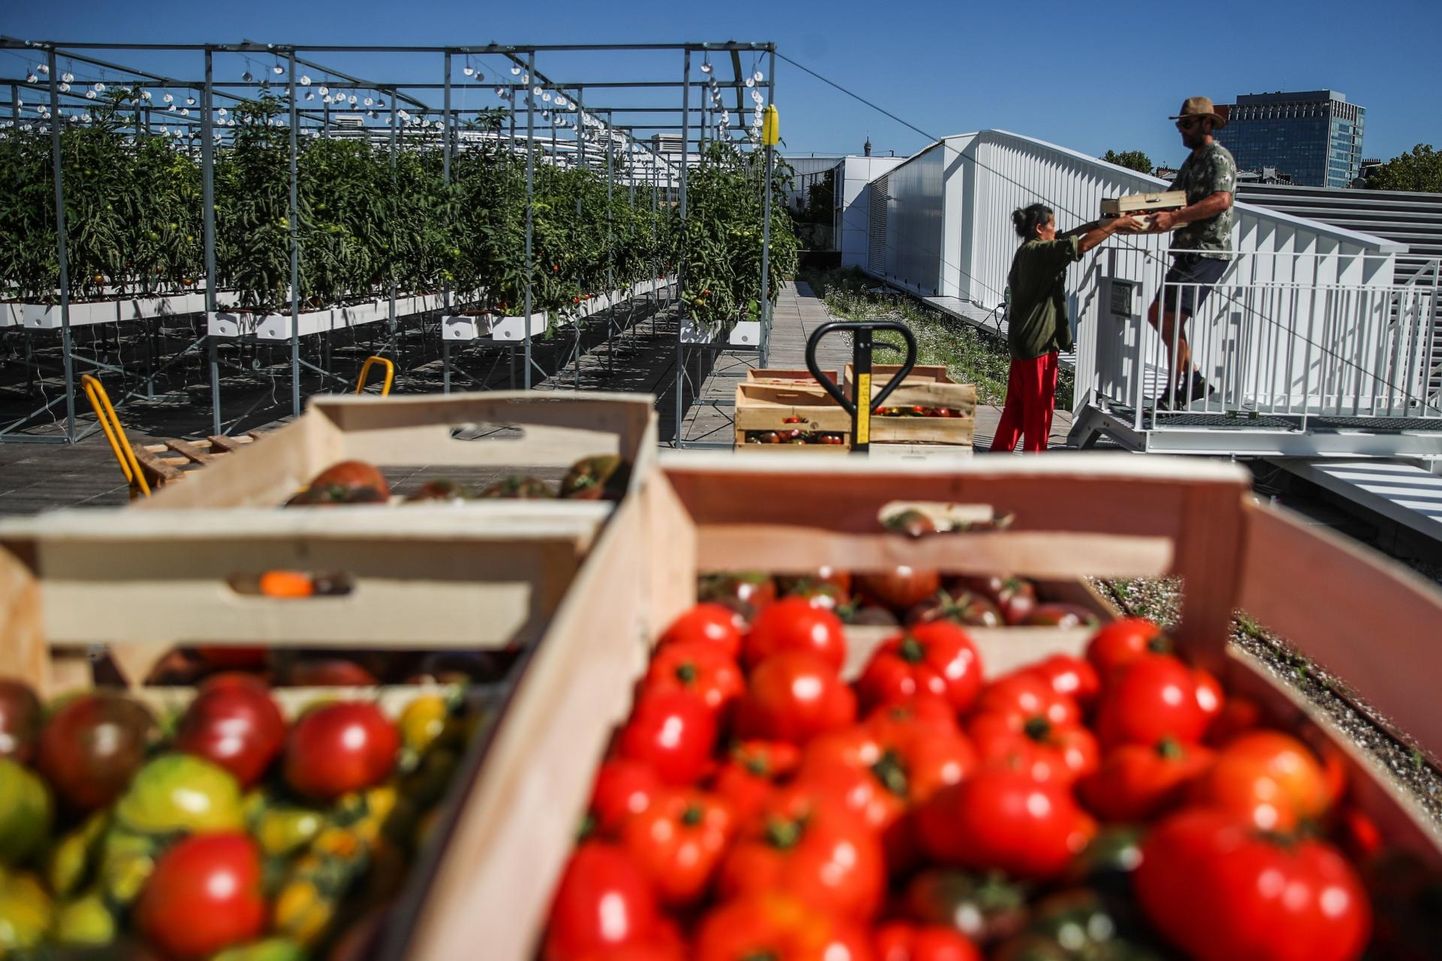 Caption: Versaille’s on Euroopa suurim, 1,4 ha suurune linnaline katusaed. Hüdropoonika ja aeropoonika võtetega kasvatatakse seal erinevaid köögivilju. Ka see on tulevikupõllumajandus. Pildil tomatite korjamine katus­aiast 10. augustil 2020.